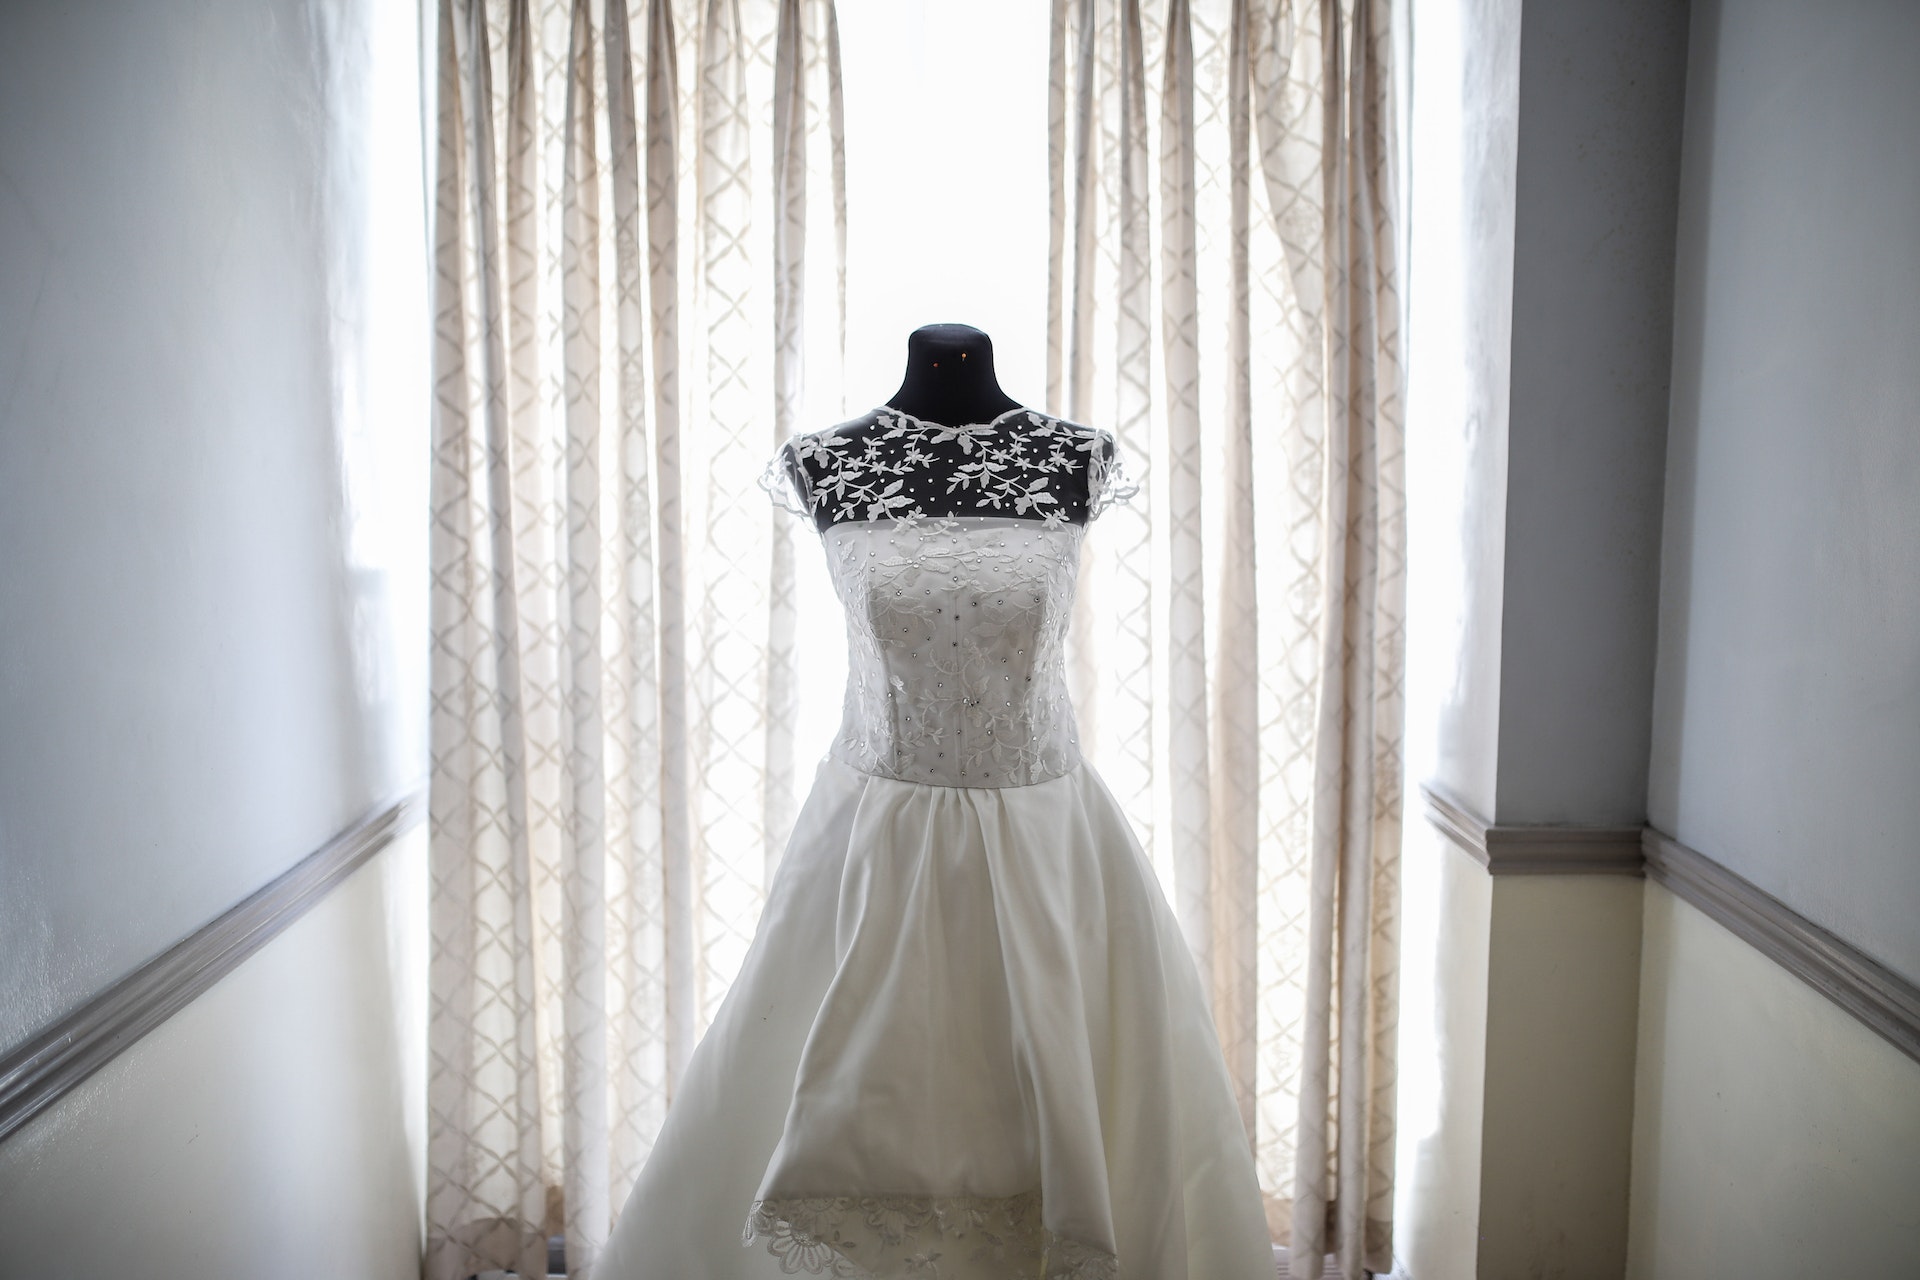 A white bridal dress | Source: Pexels